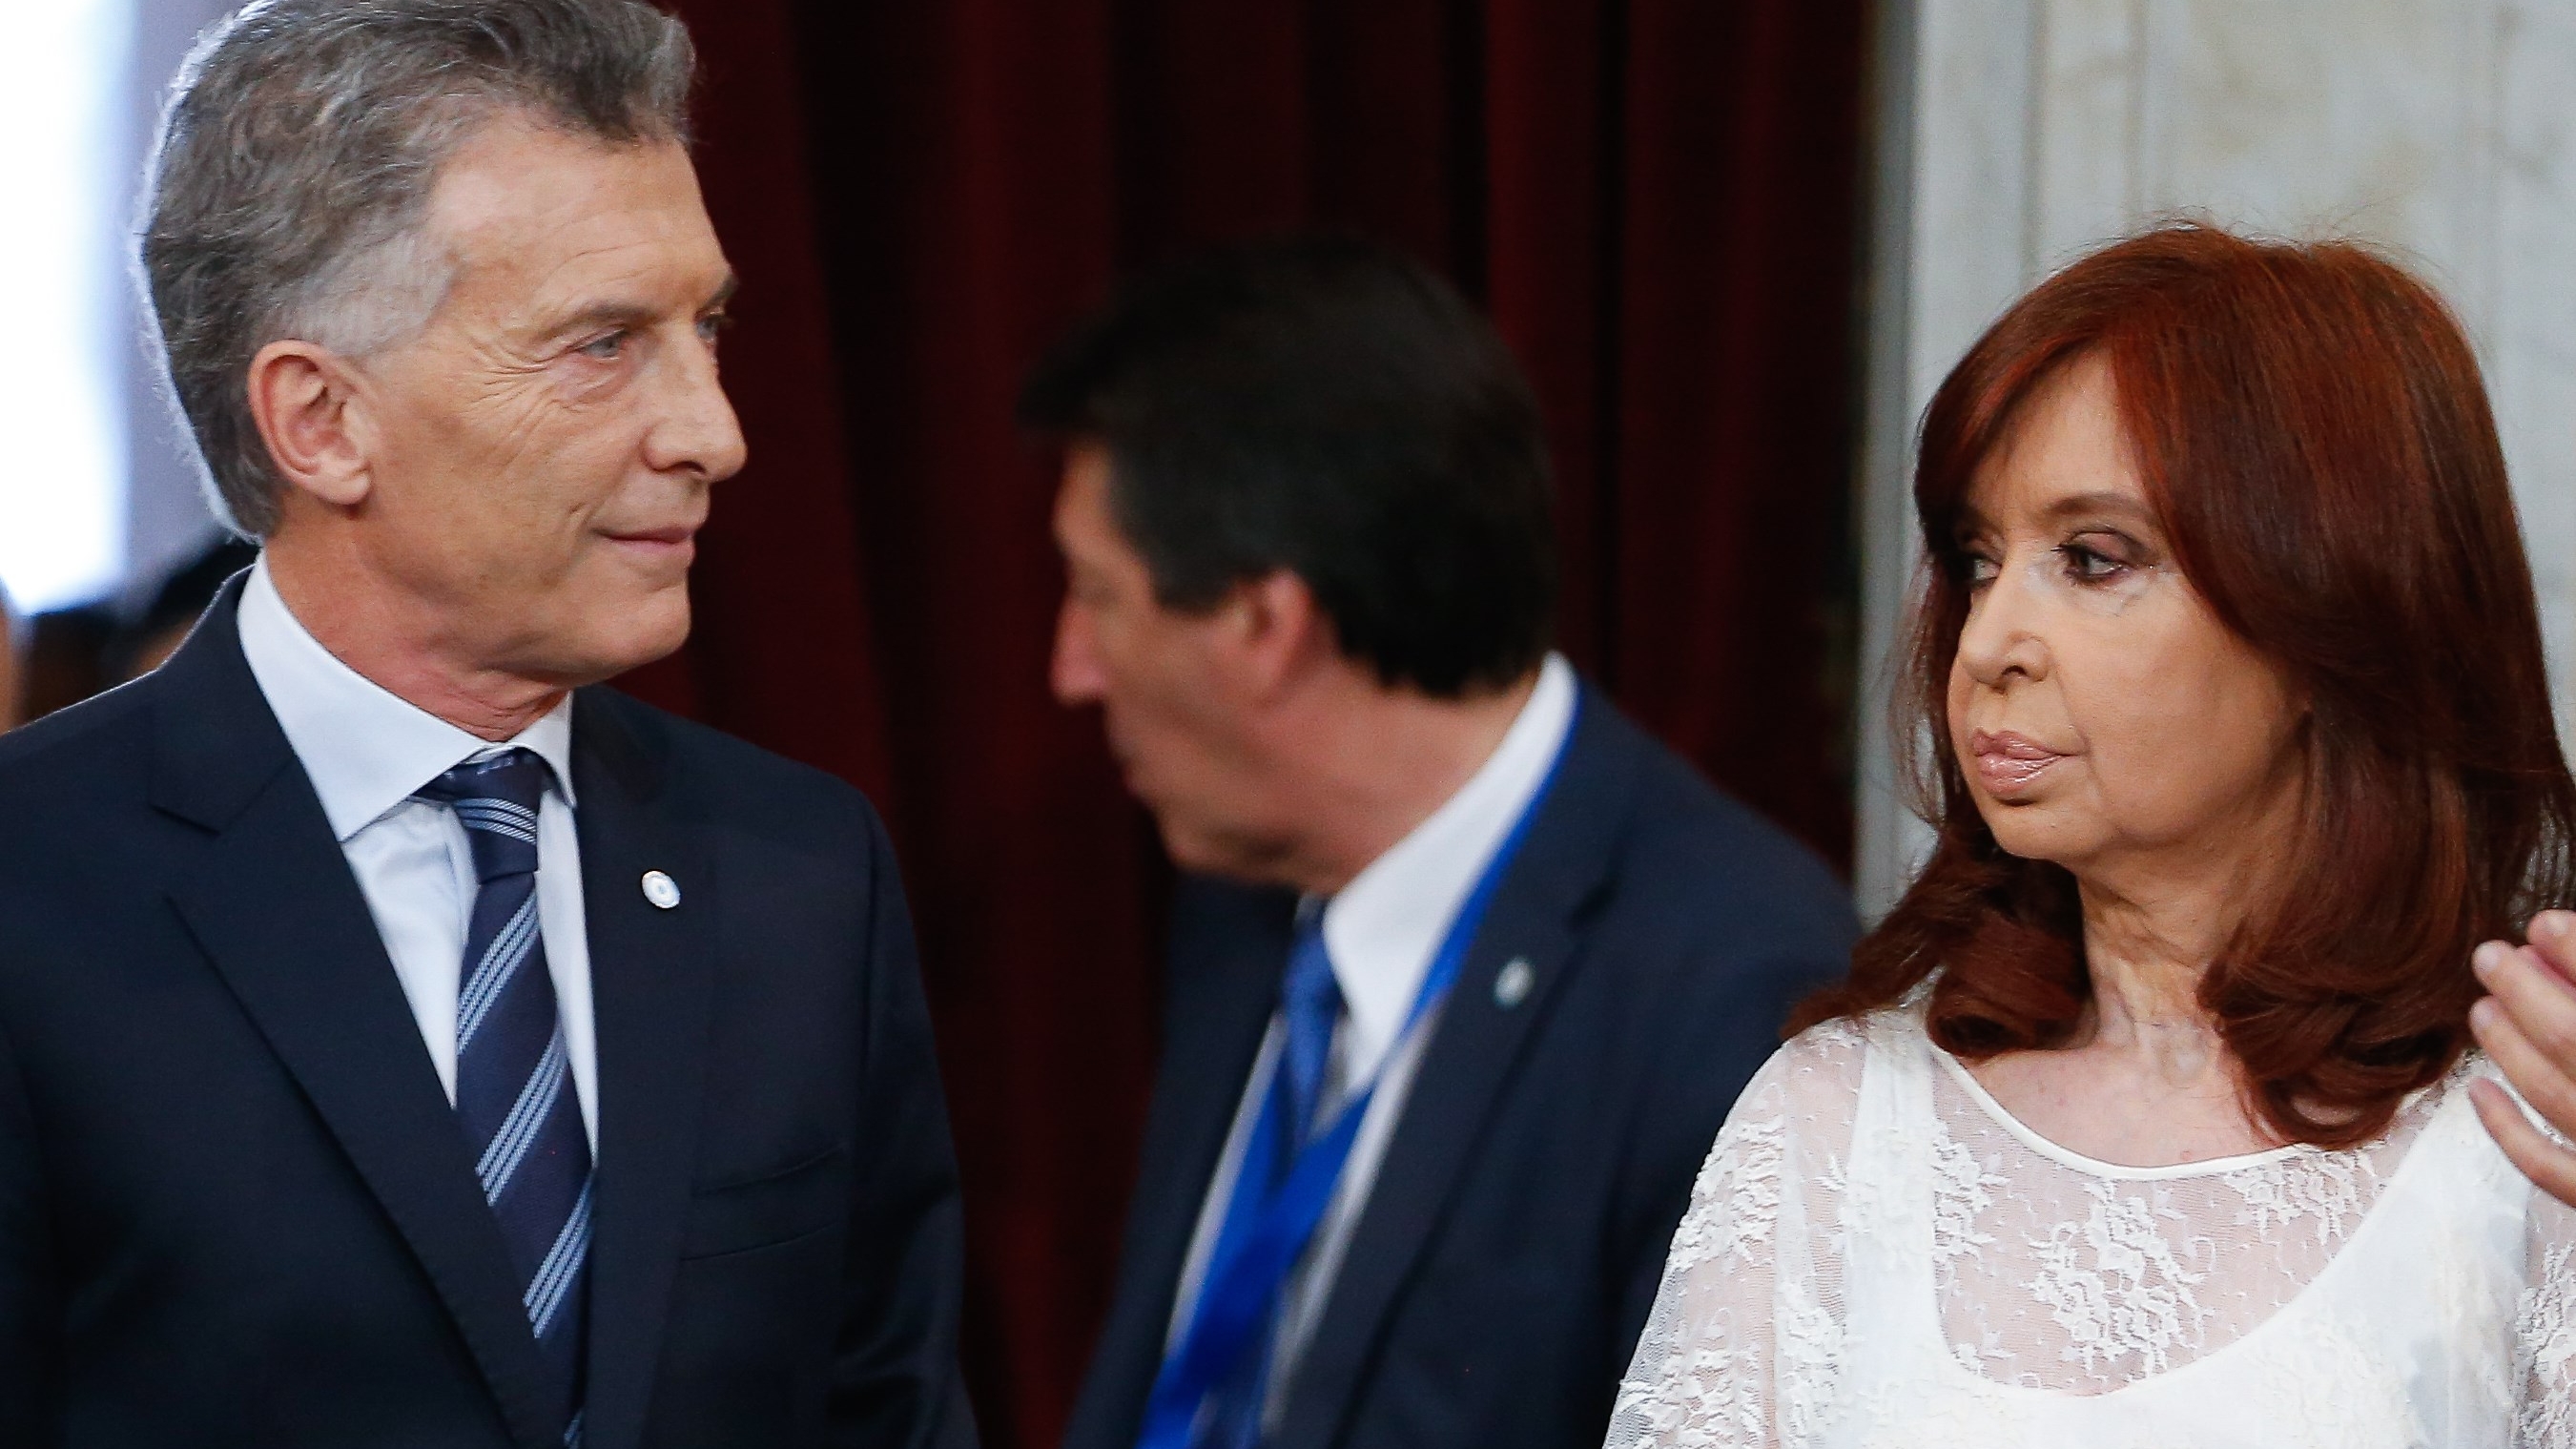 Foto mítica. El día en que Mauricio Macri le entregó el poder a Alberto Fernández y Cristina Kirchner. (EFE)